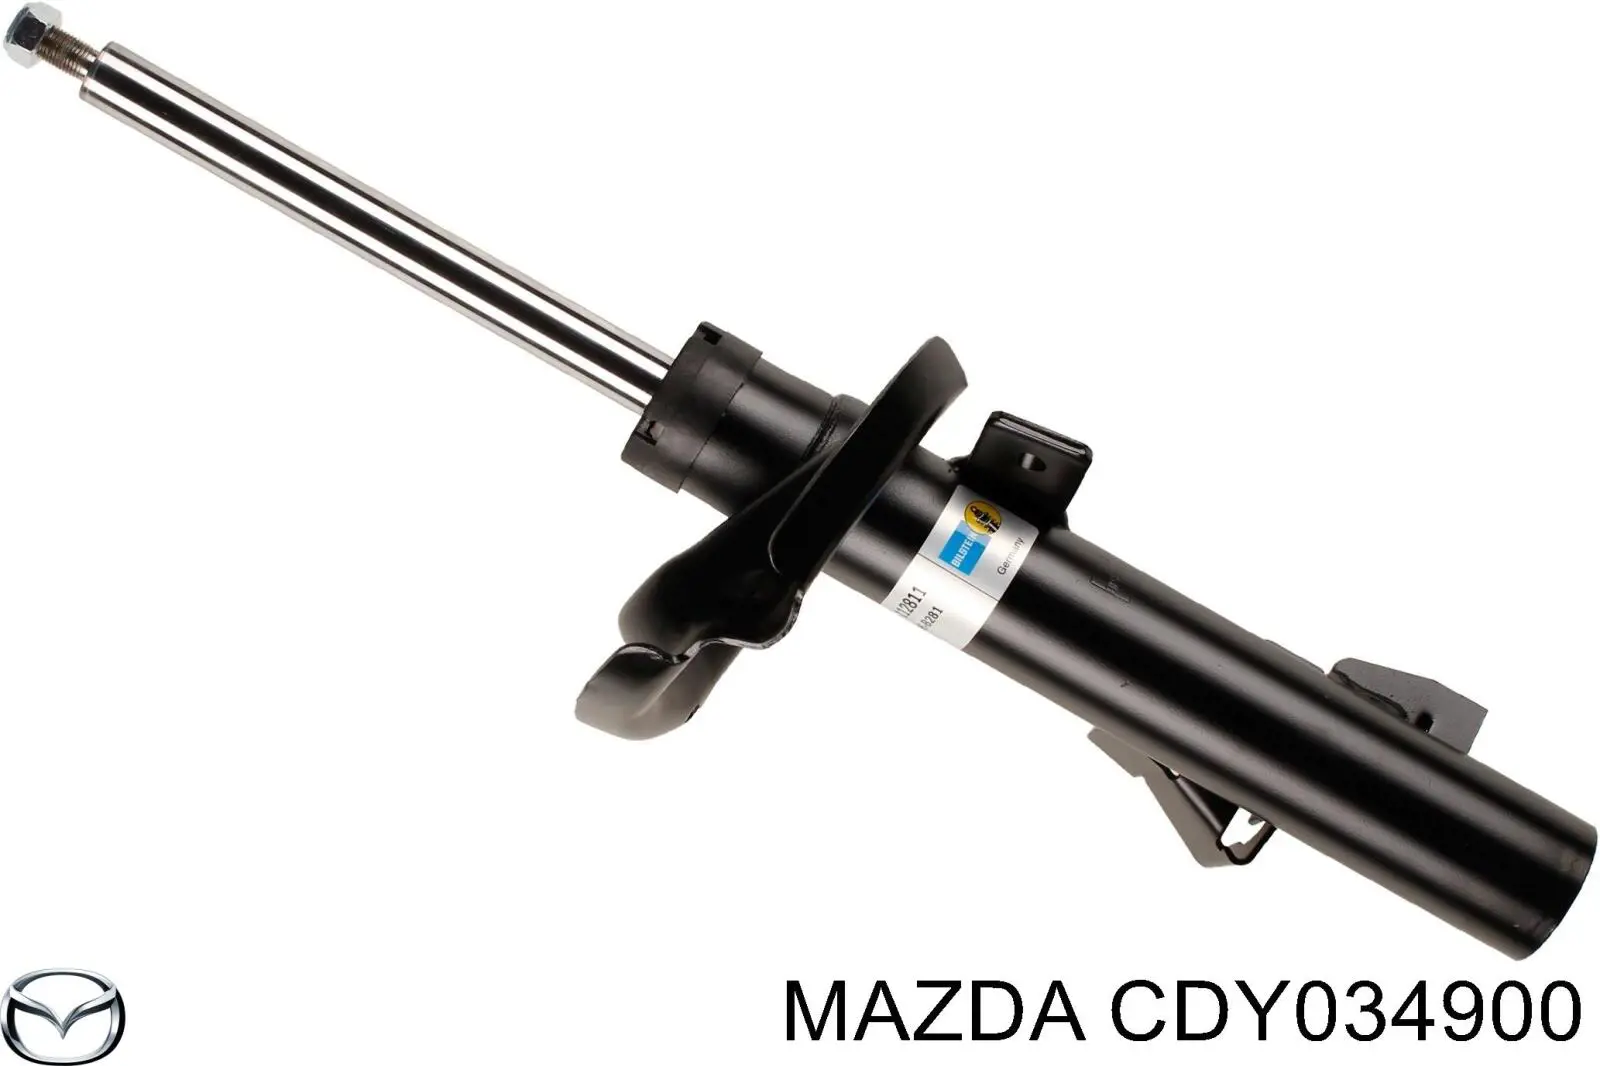 CDY034900 Mazda 